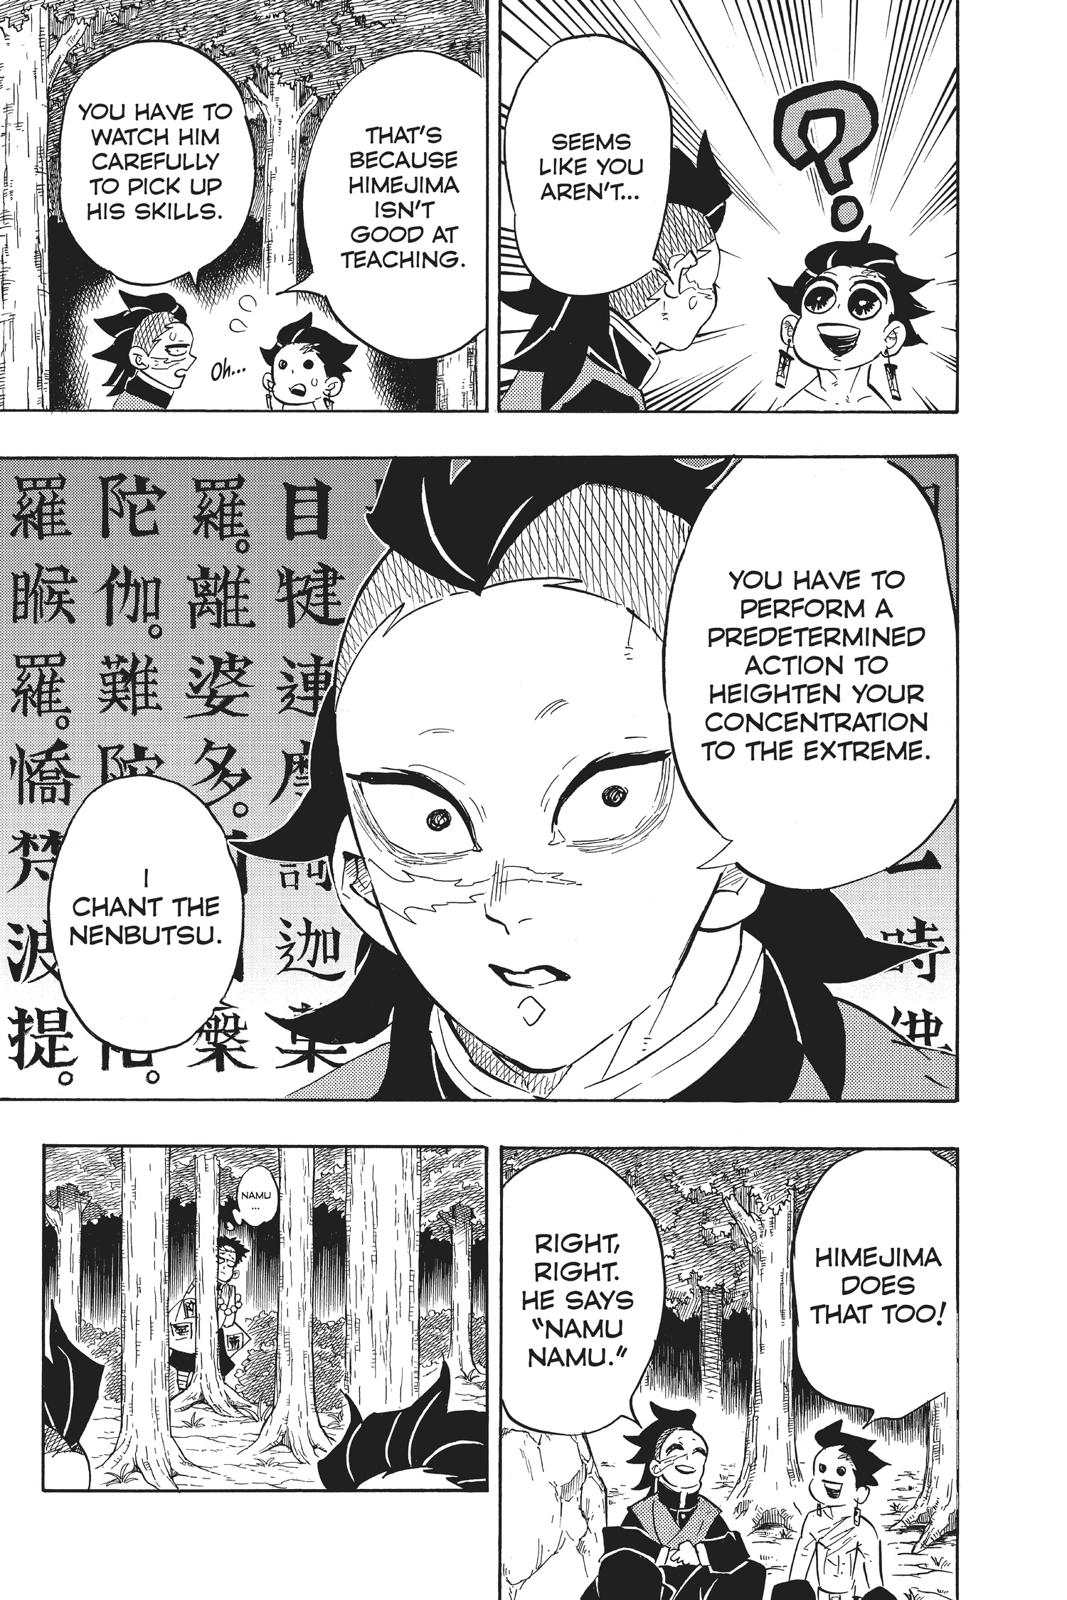 Demon Slayer Manga Manga Chapter - 134 - image 15